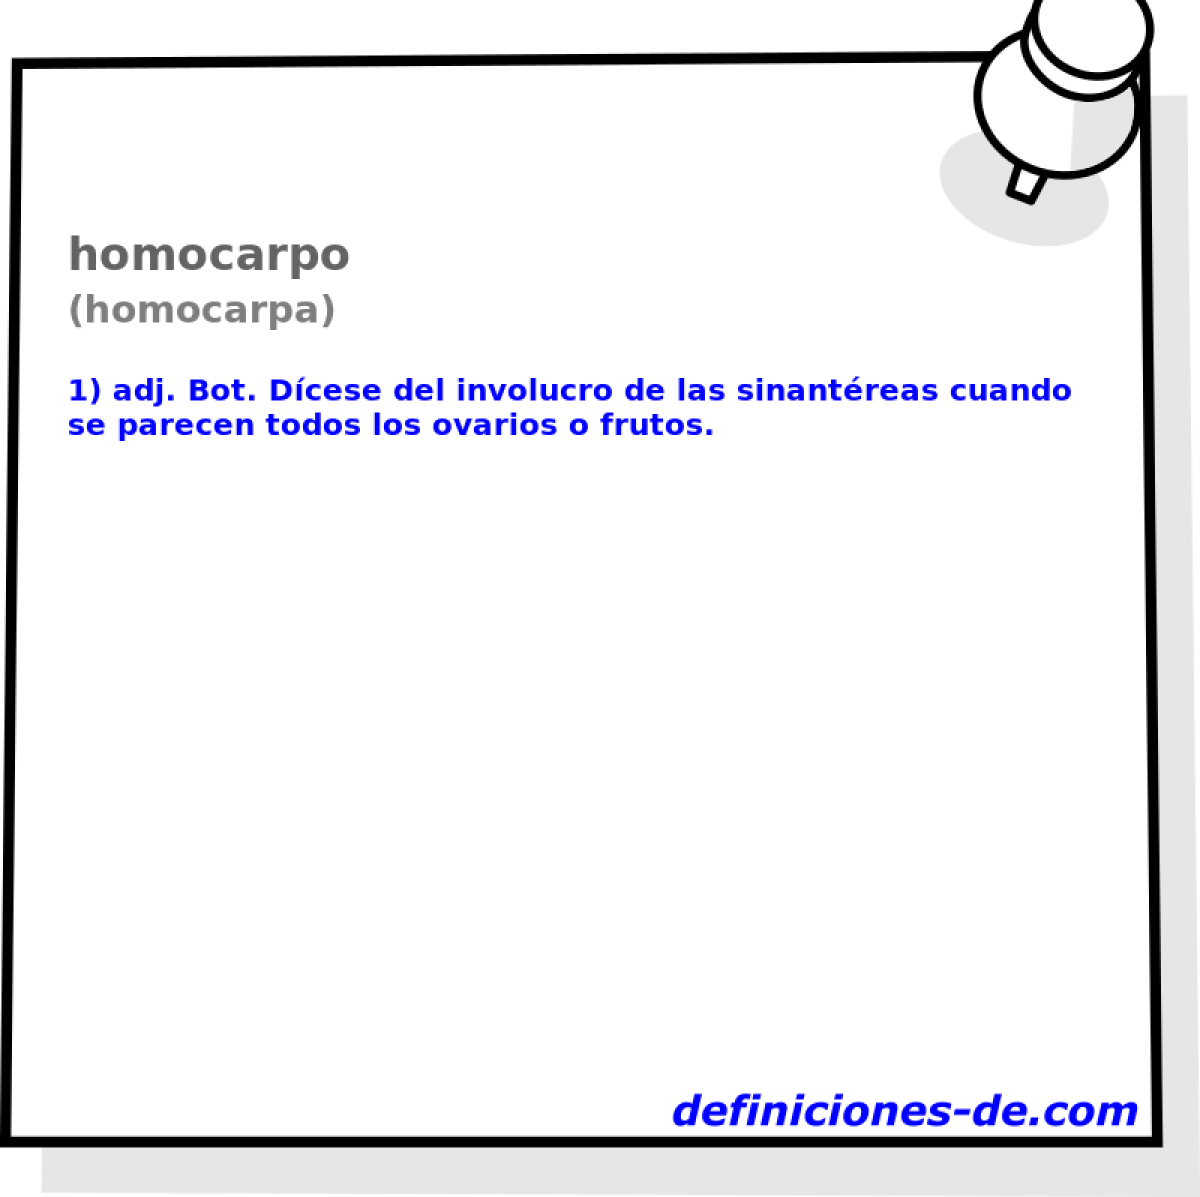 homocarpo (homocarpa)